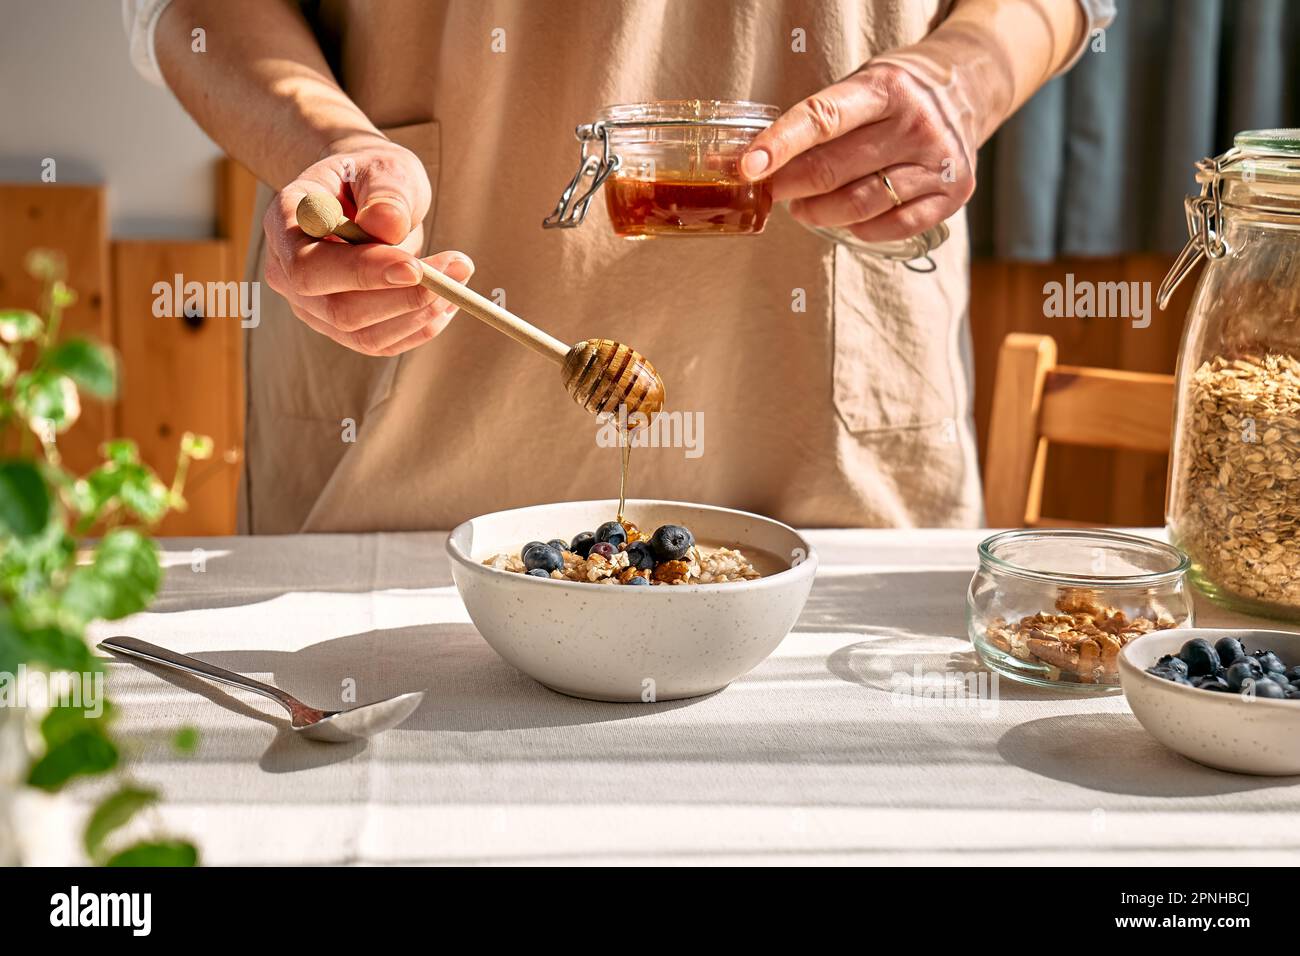 Femme préparant un petit déjeuner sain et diététique. Une femelle verse le miel à la main dans le bol avec du porridge de flocons d'avoine, des noix et des myrtilles. Banque D'Images